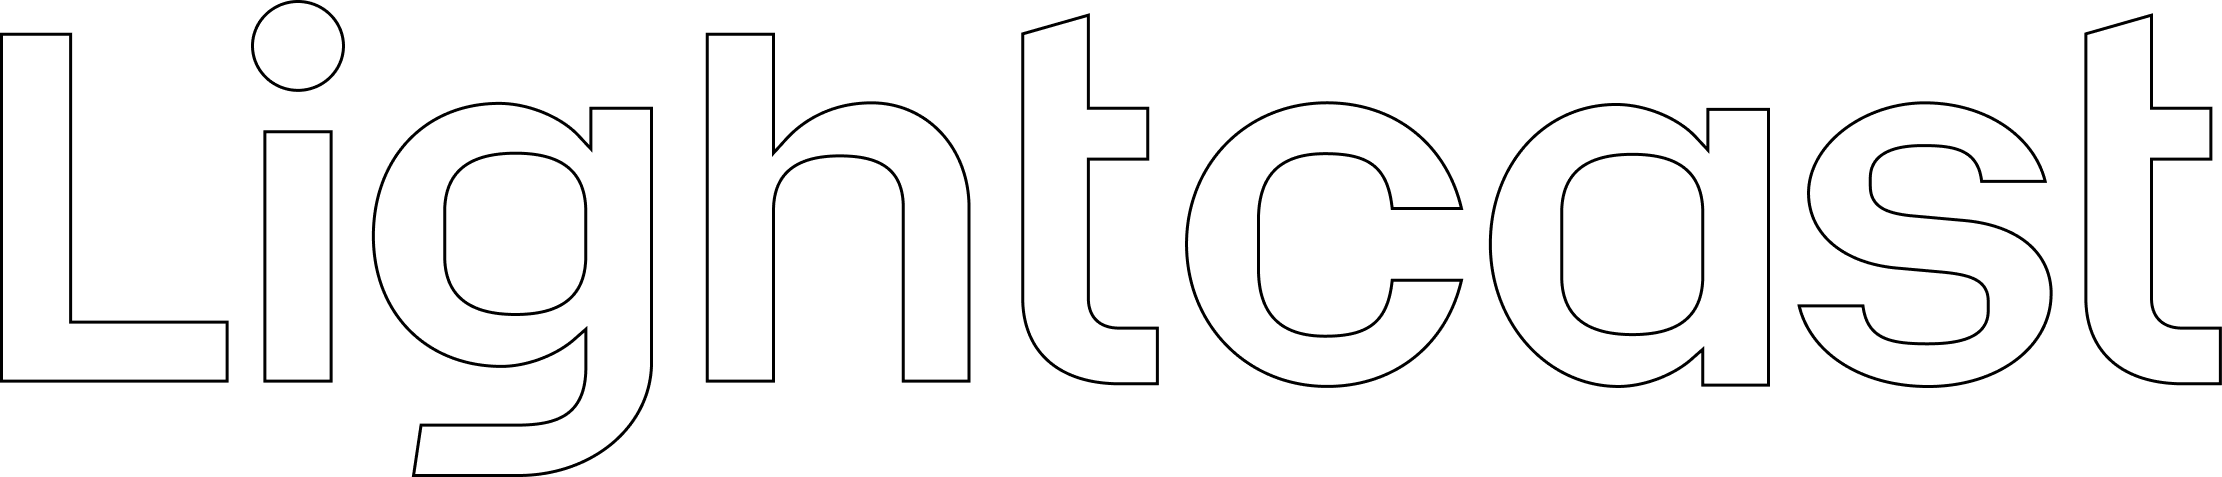 Lightcast logo outlined